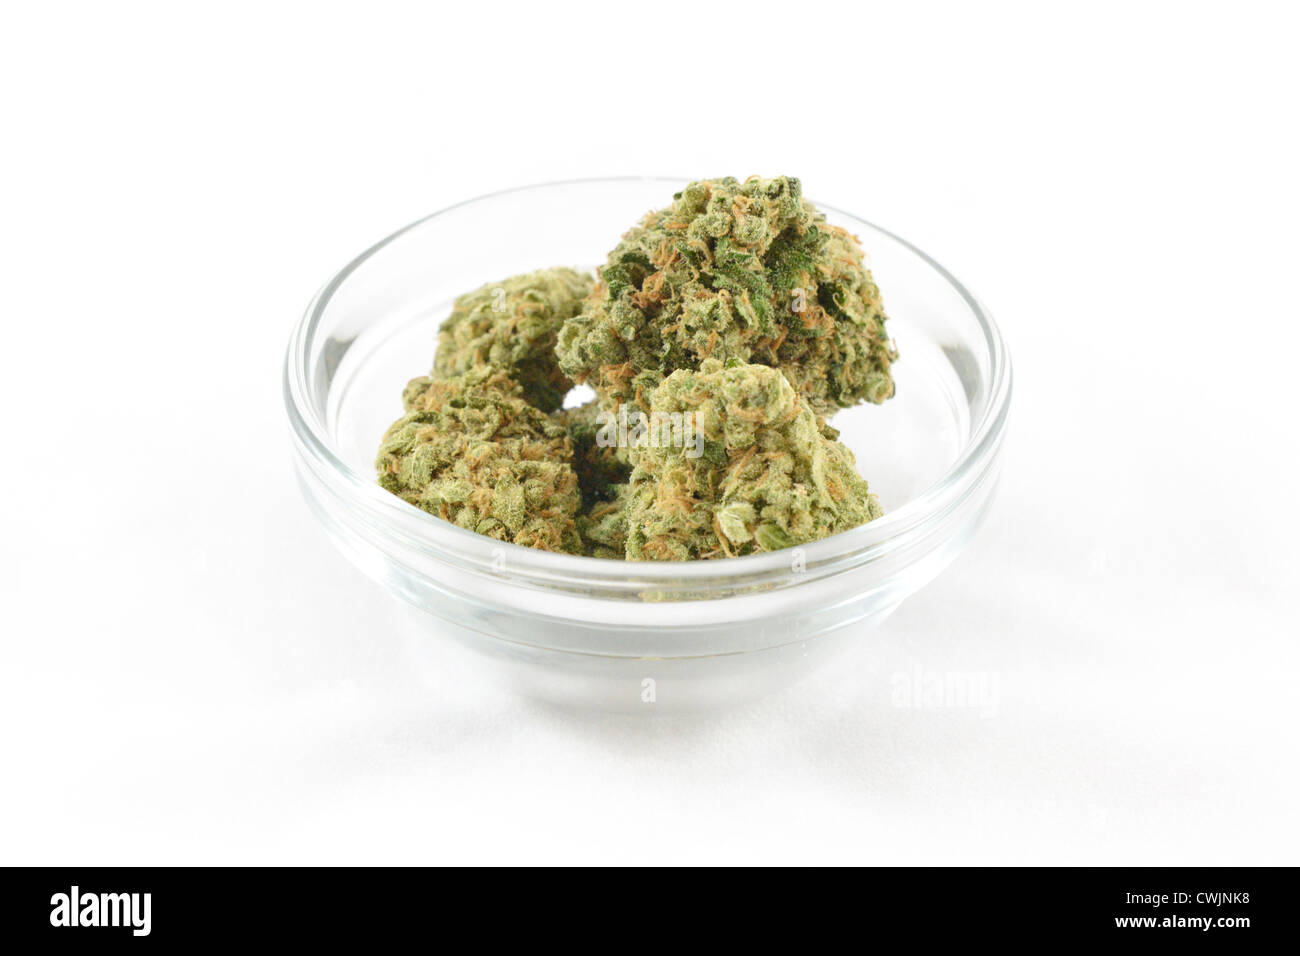 Eine Auswahl an medizinischem Marihuana in Los Angeles, Kalifornien, USA. Stockfoto